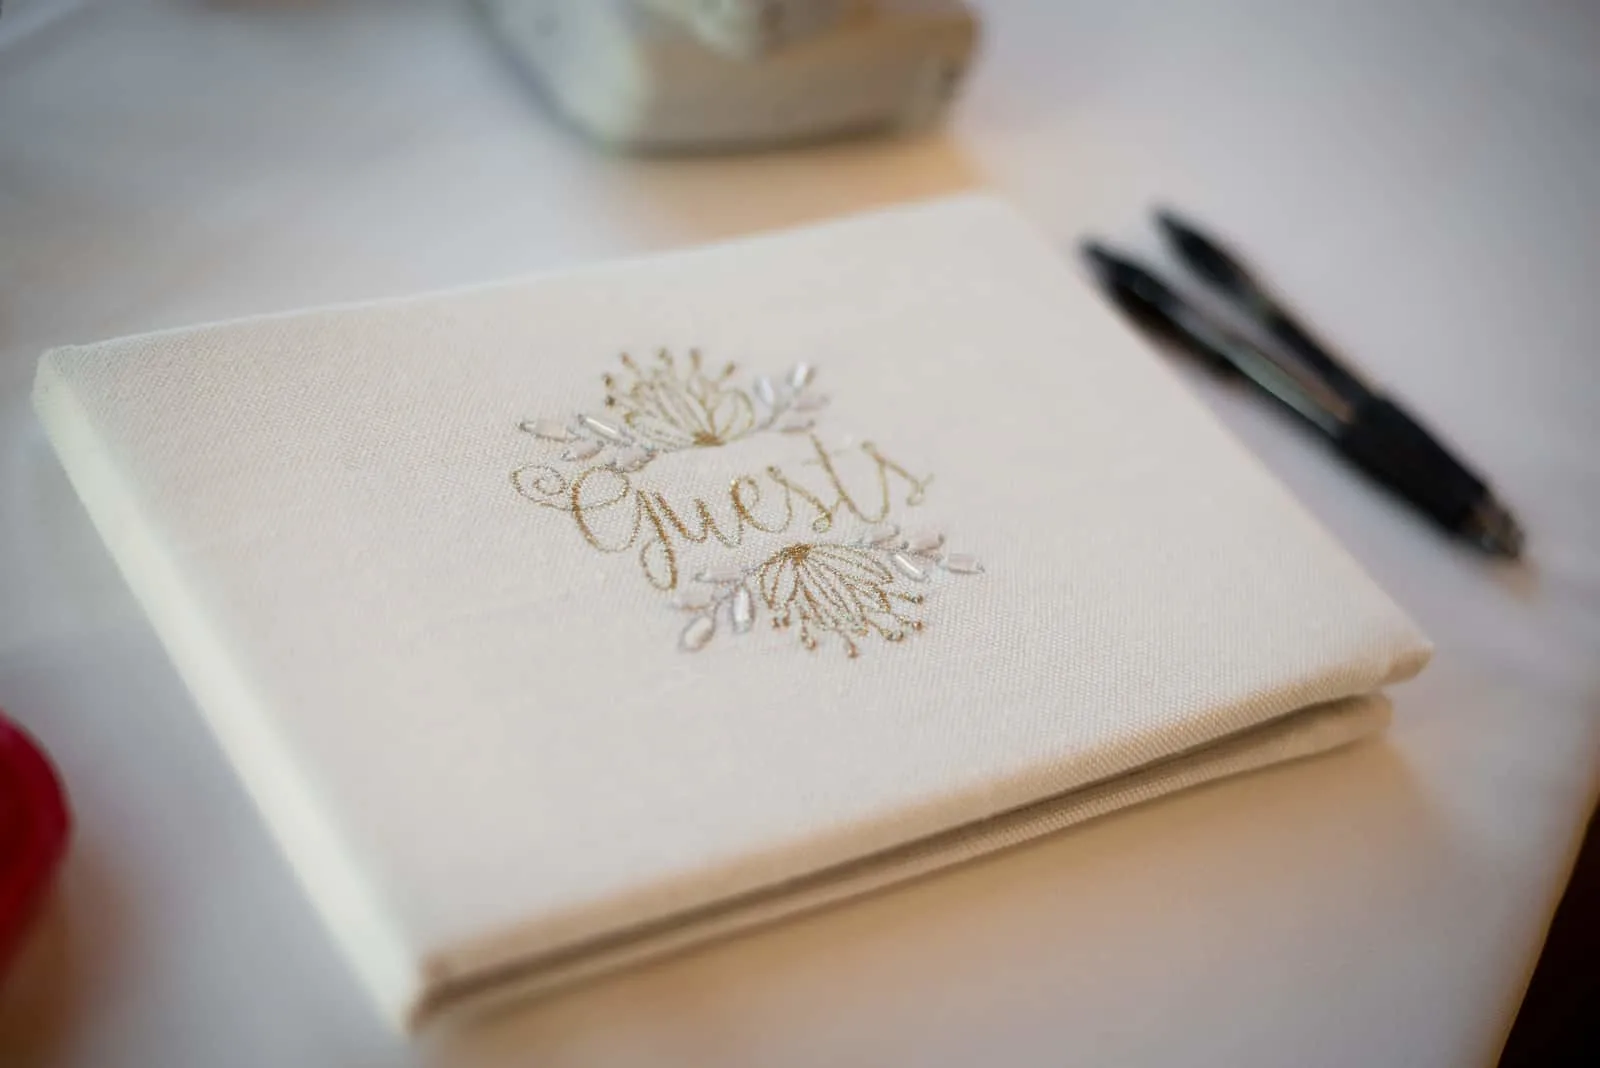 Gästebuch für den Hochzeitstag, damit die Gäste den Hochzeitstag des Paares unterschreiben können